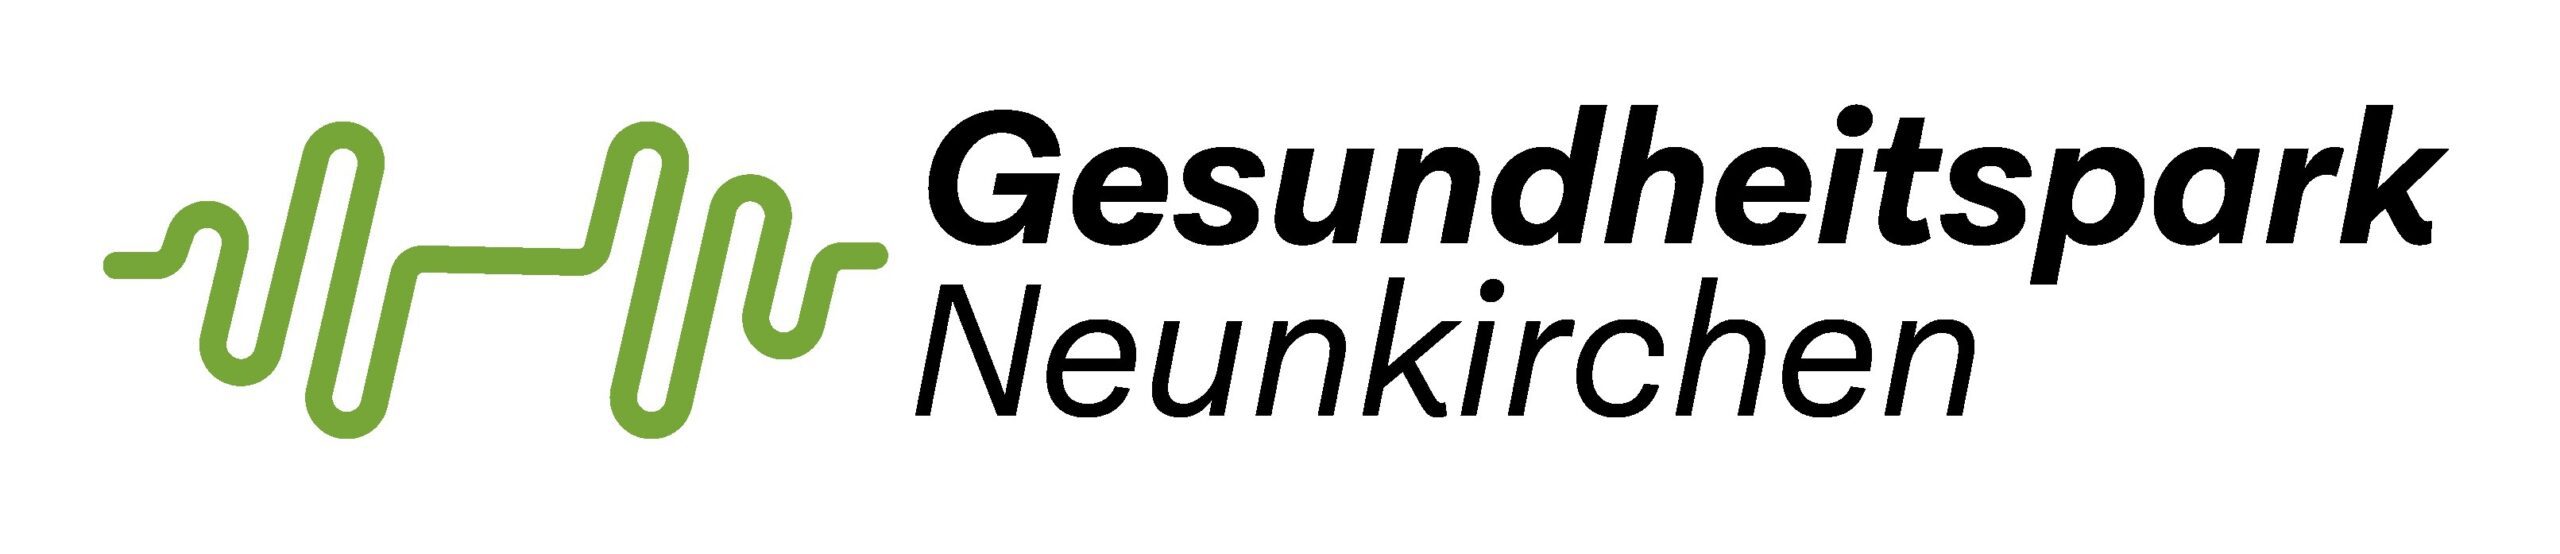 Gesundheitspark Logo fitmach-aktion